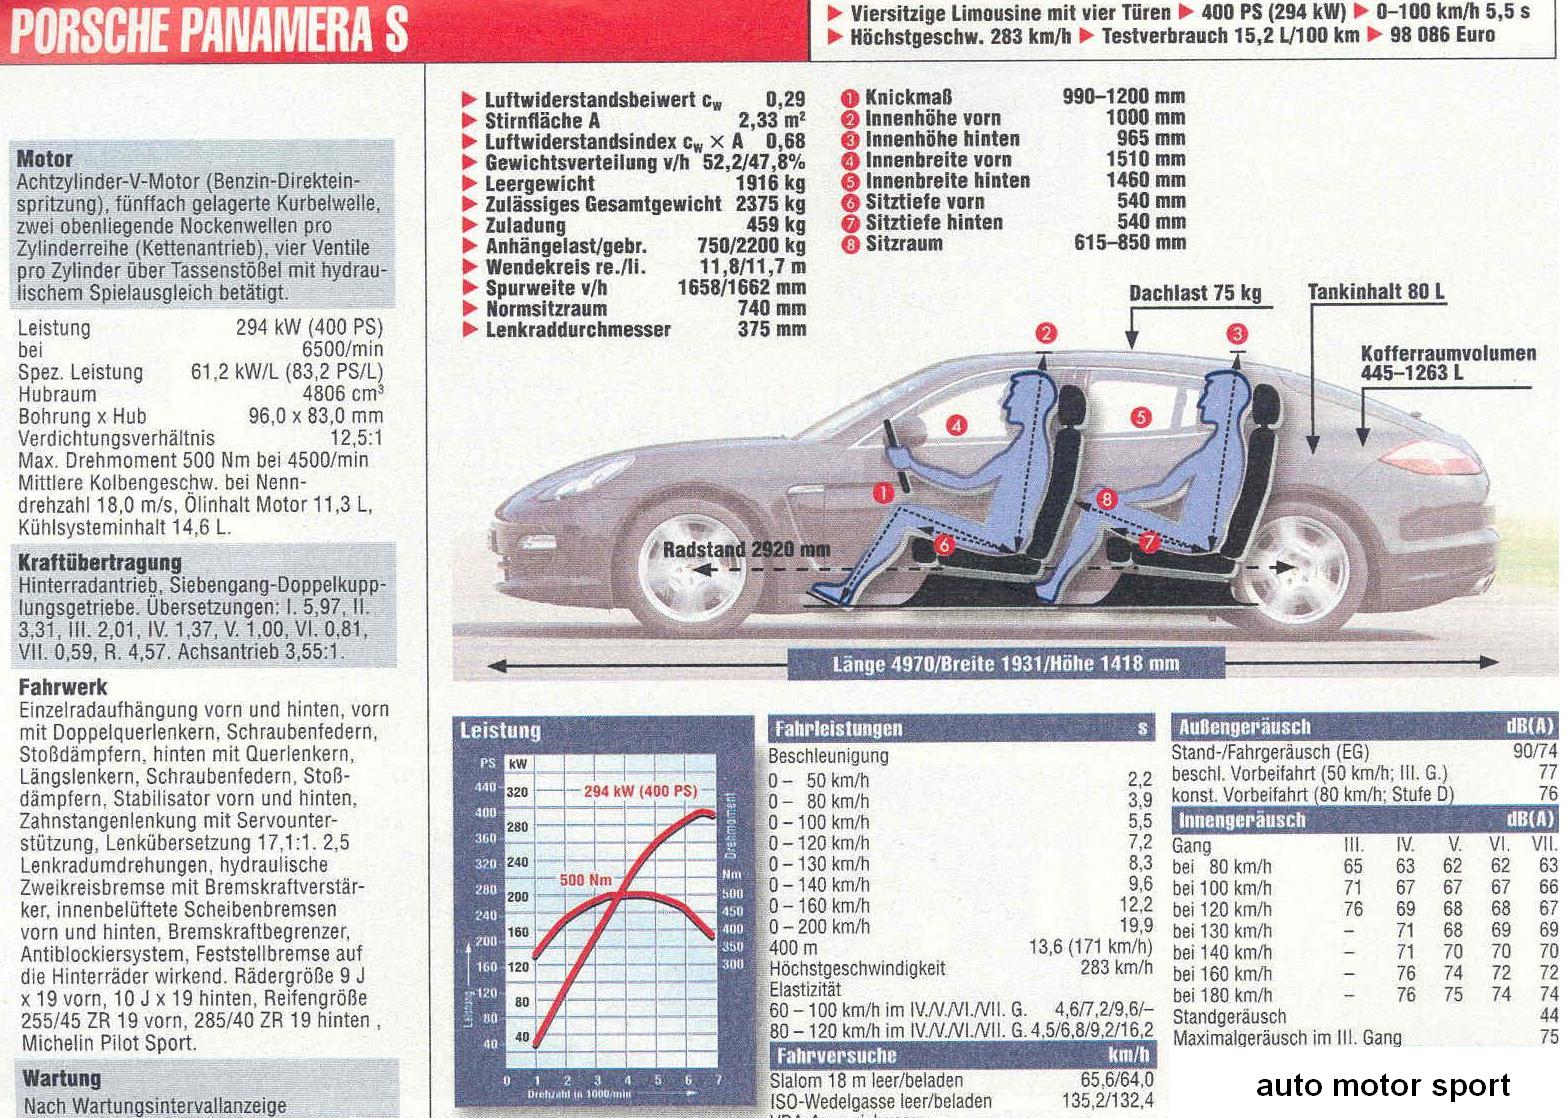 Datenblatt Porsche Panamera